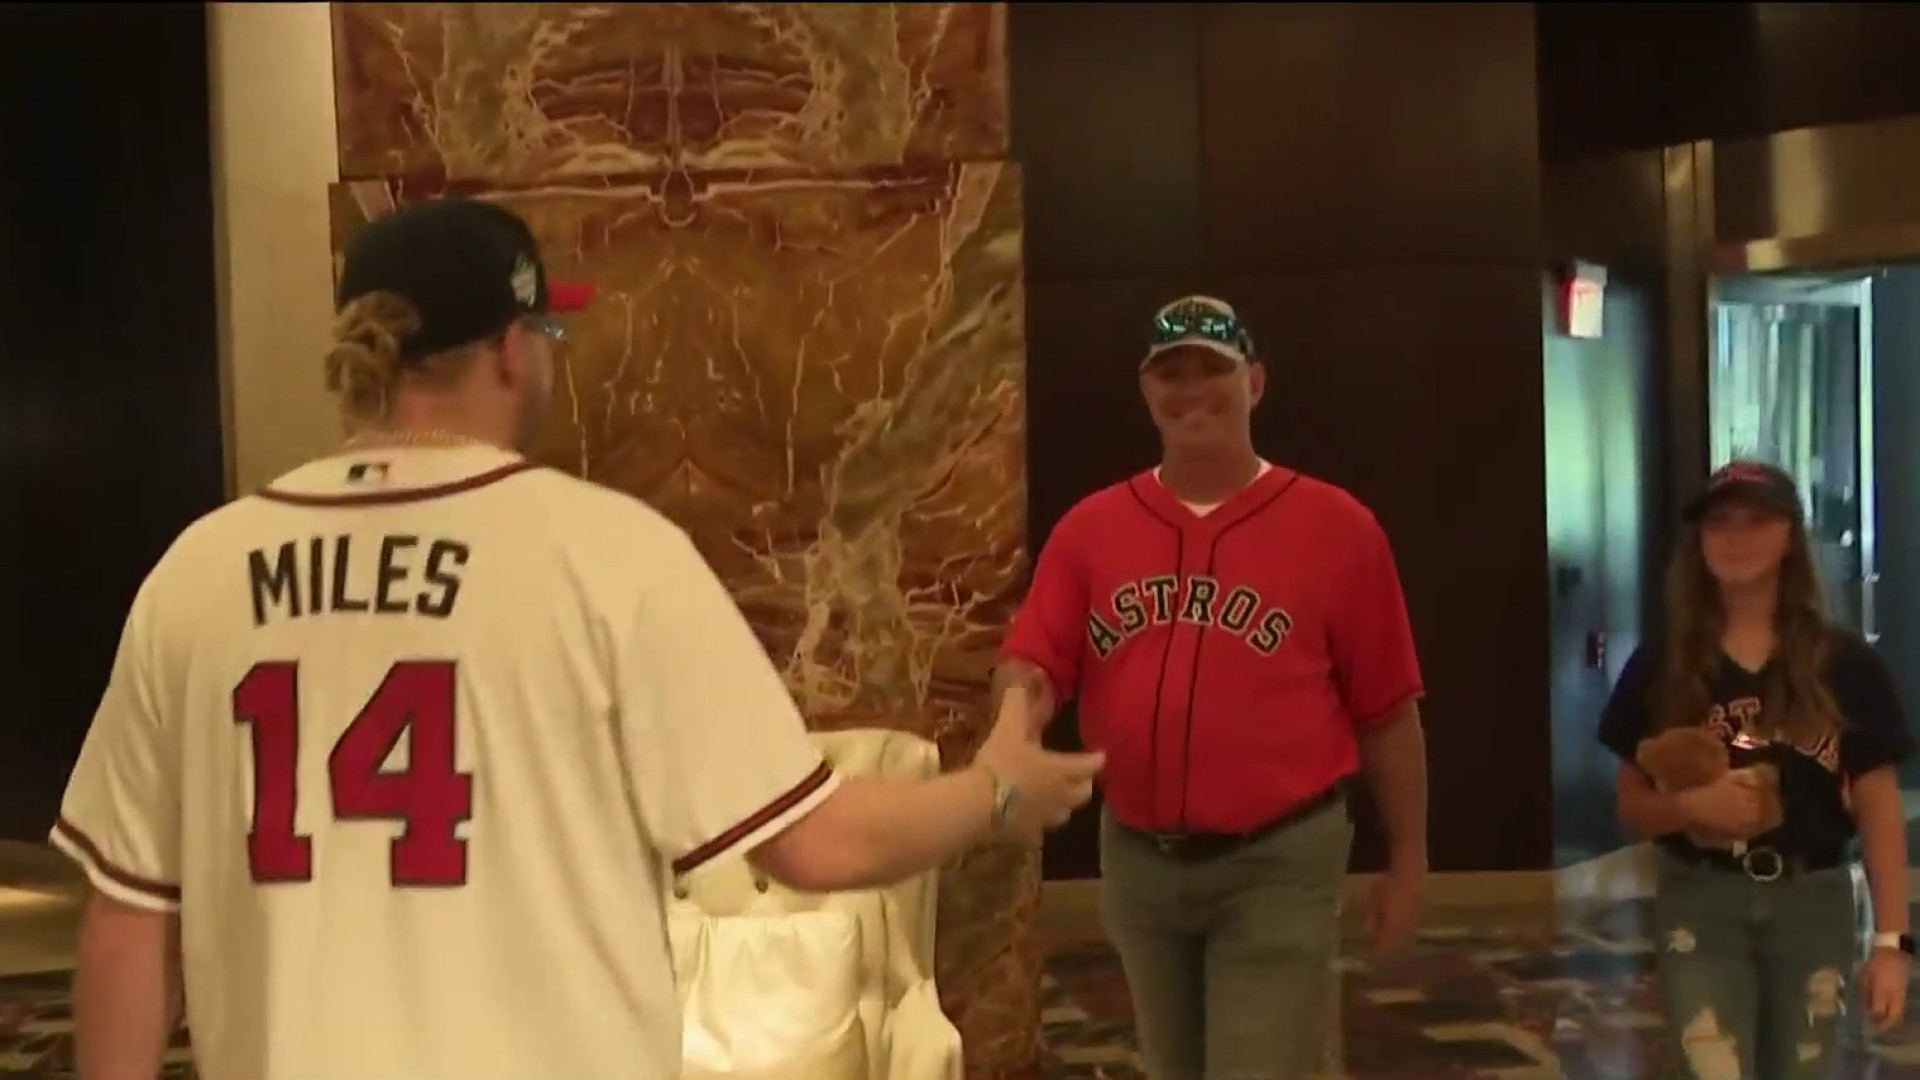 Braves fan gives Astros fan World Series tickets